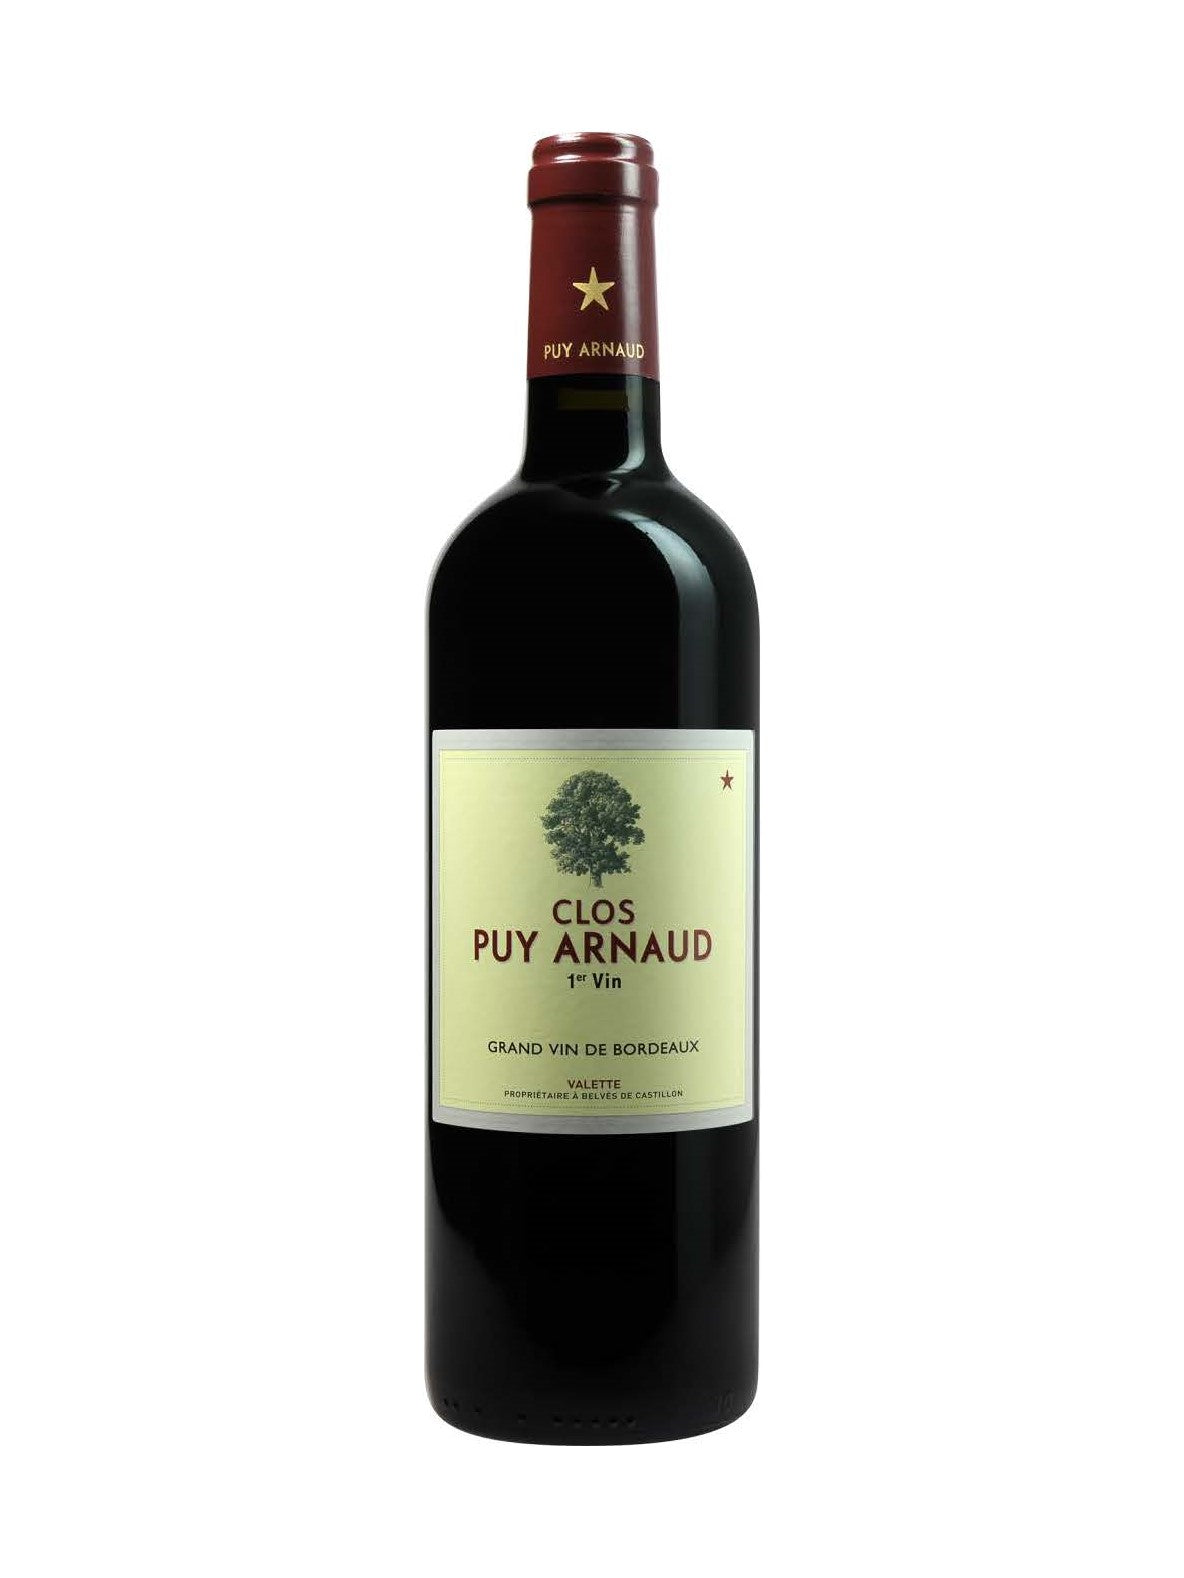 Clos Puy Arnaud Castillion Cotes de Bordeaux Grand Vin